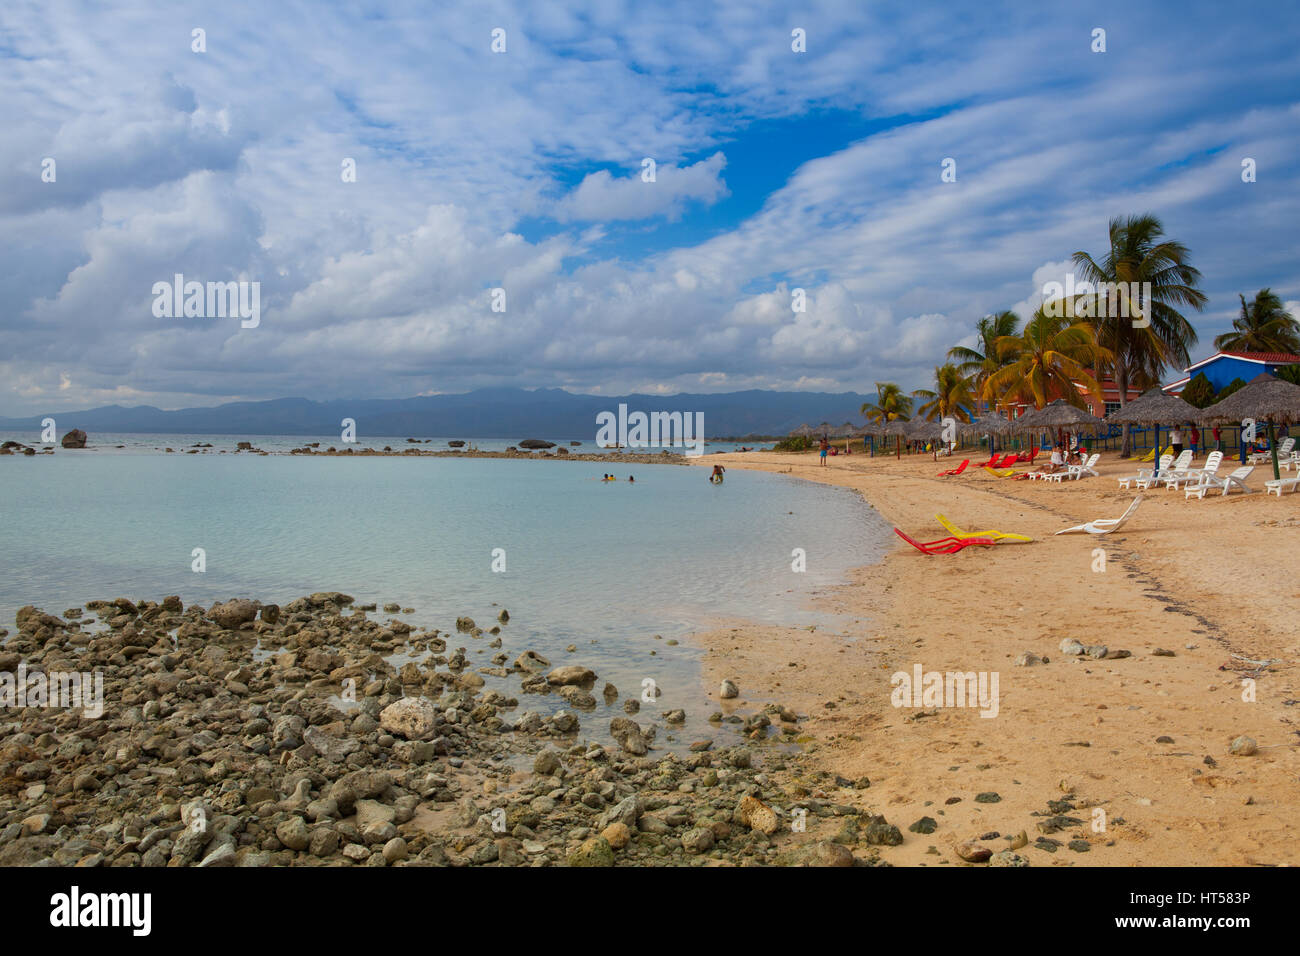 Spielen Giron, Kuba - Januar 30,2017: am Strand Playa Giron, Kuba. Dieser Strand ist berühmt für seine Rolle während der Schweinebucht-Invasion. Stockfoto